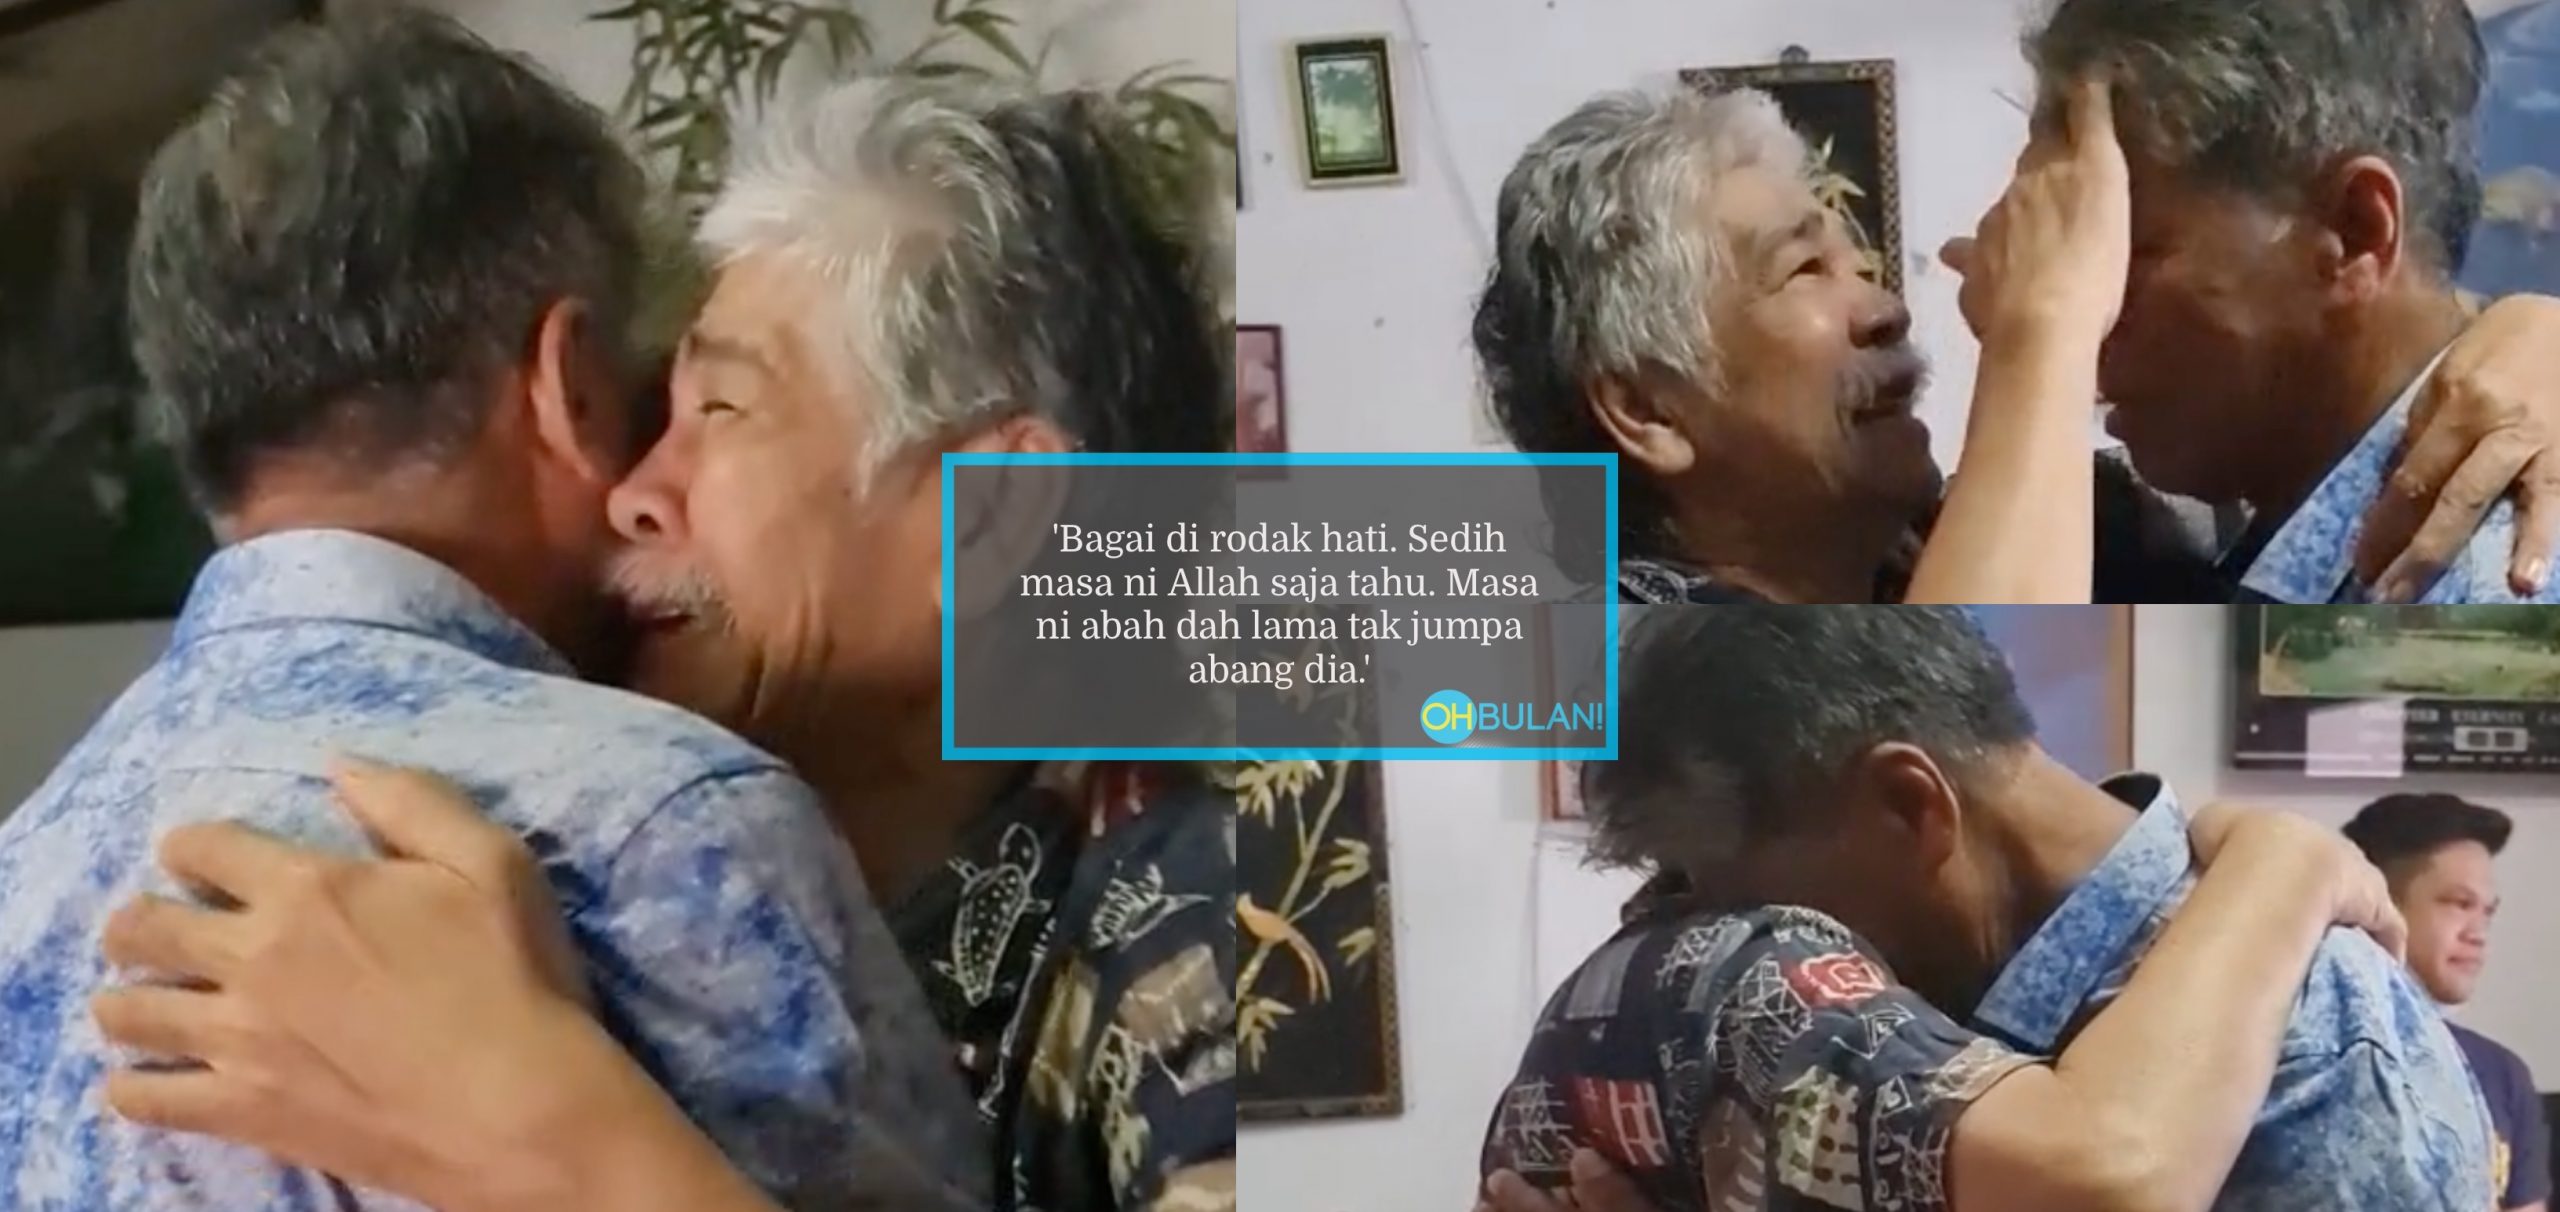 [VIDEO] Setelah Sekian Lama Tidak Jumpa, Pelukan Abang & Adik Bikin Sebak